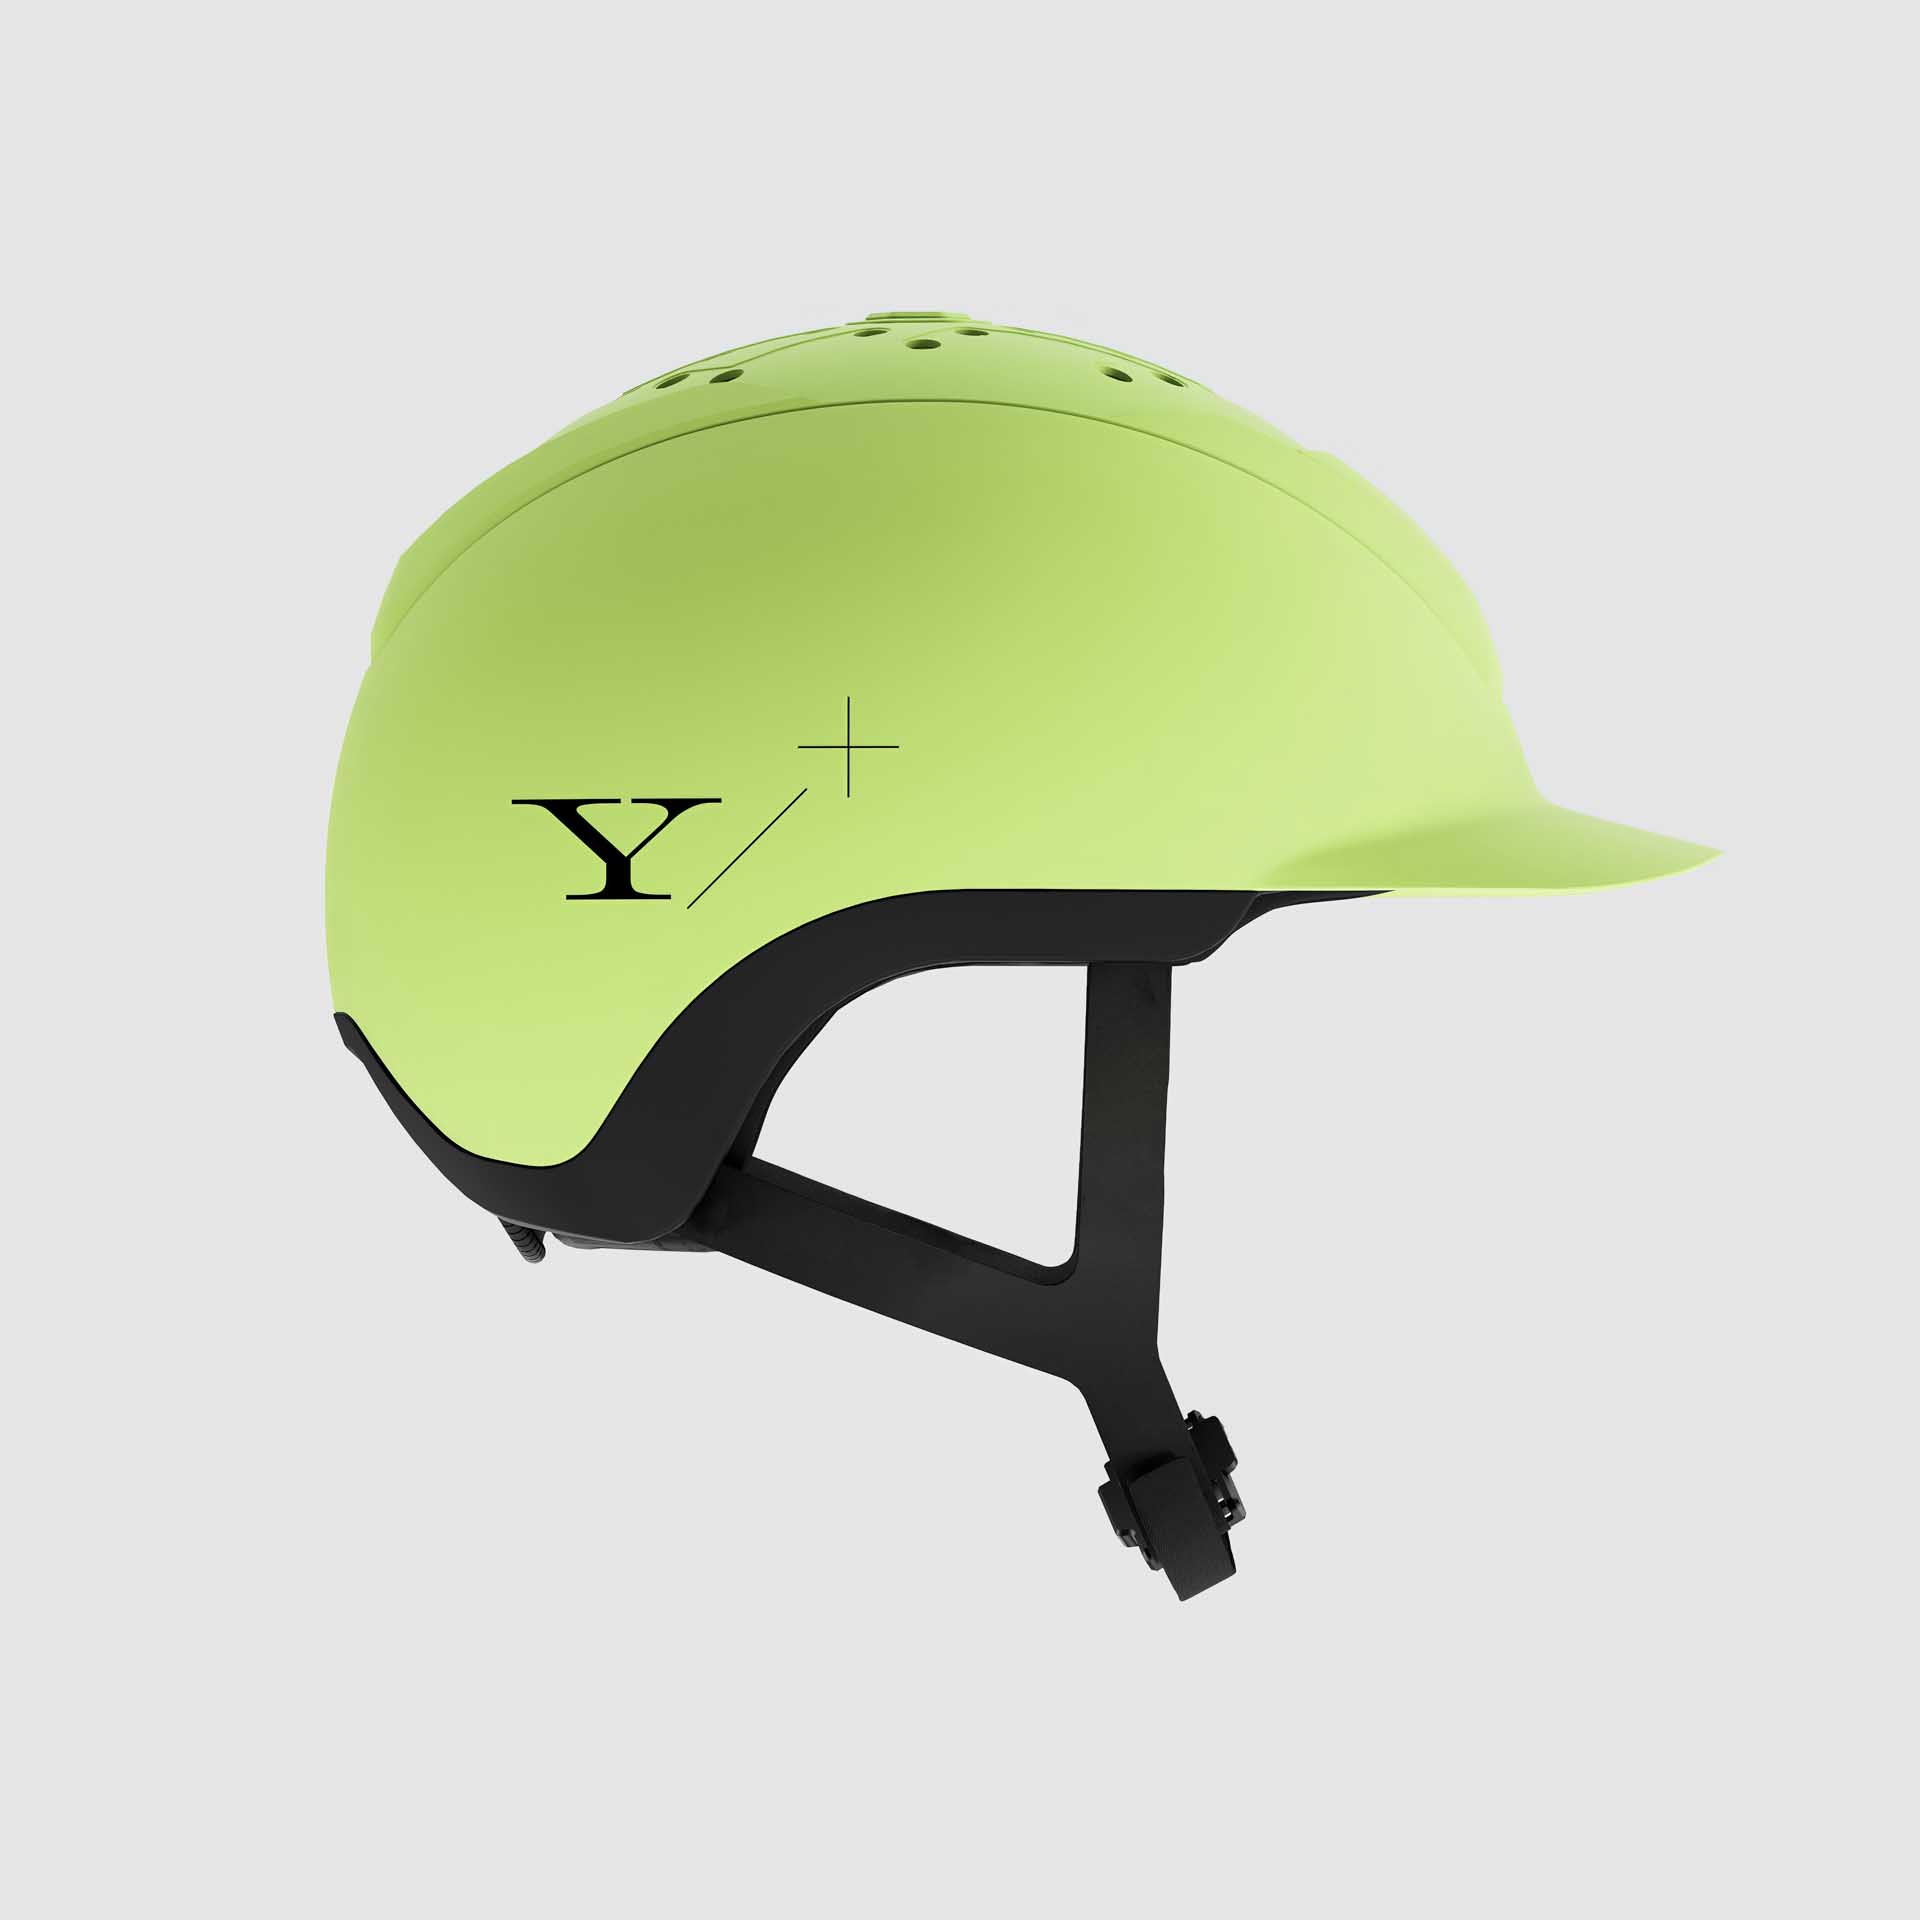 Yelm Reithelm Hybrid Helmet 1.0 Yellow One Size